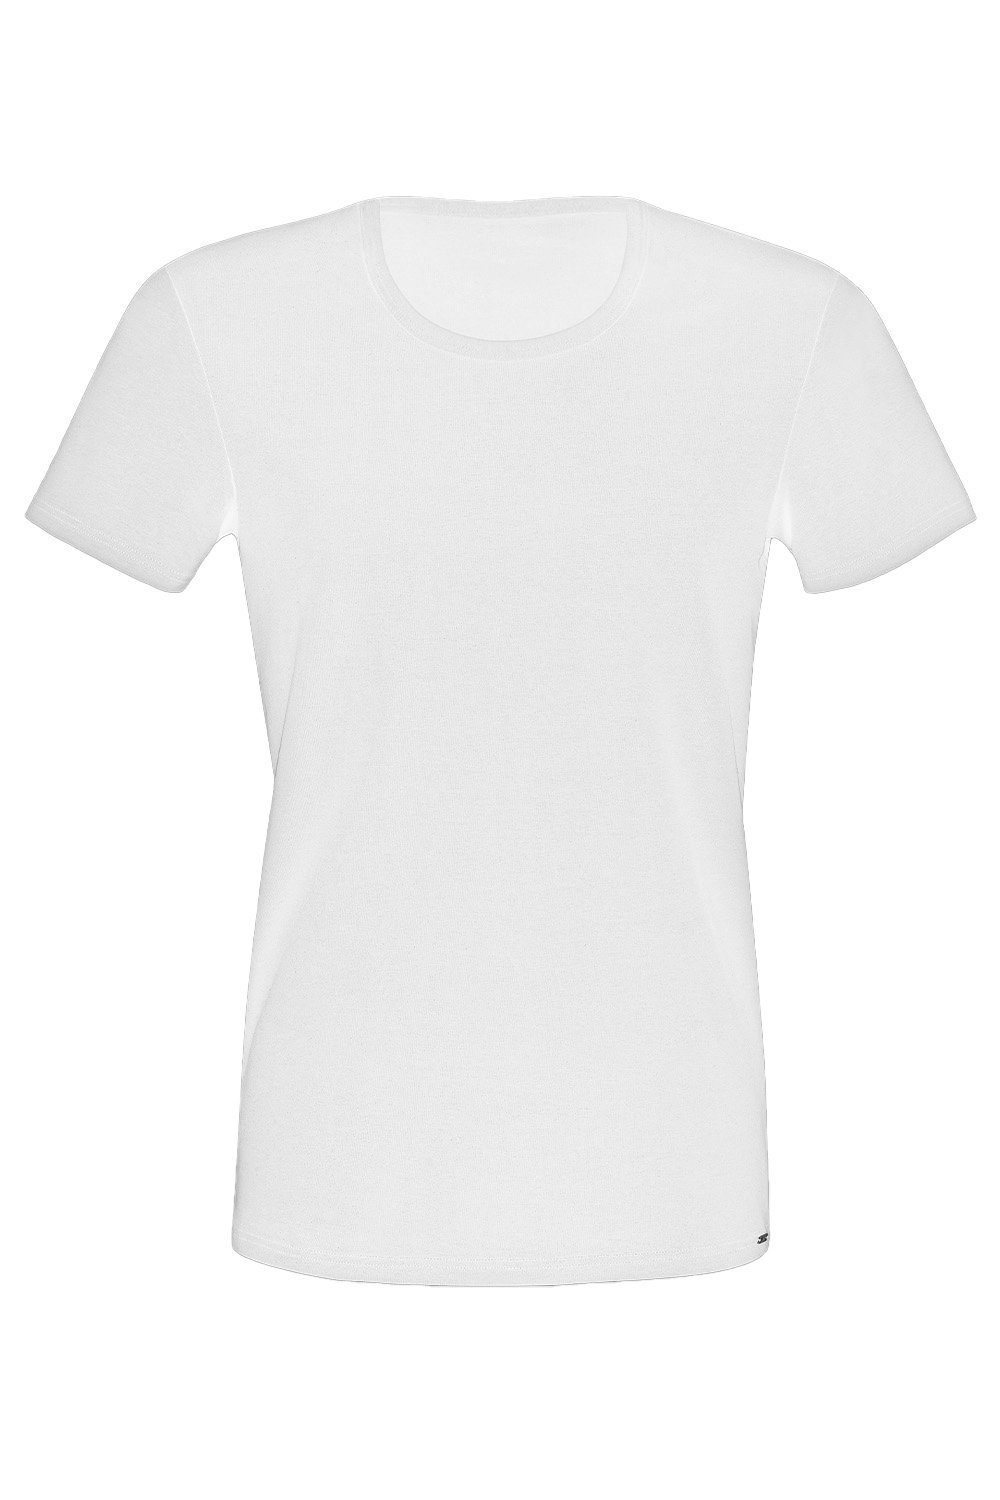 T-Shirt 31010 T-Shirt Lisca weiß